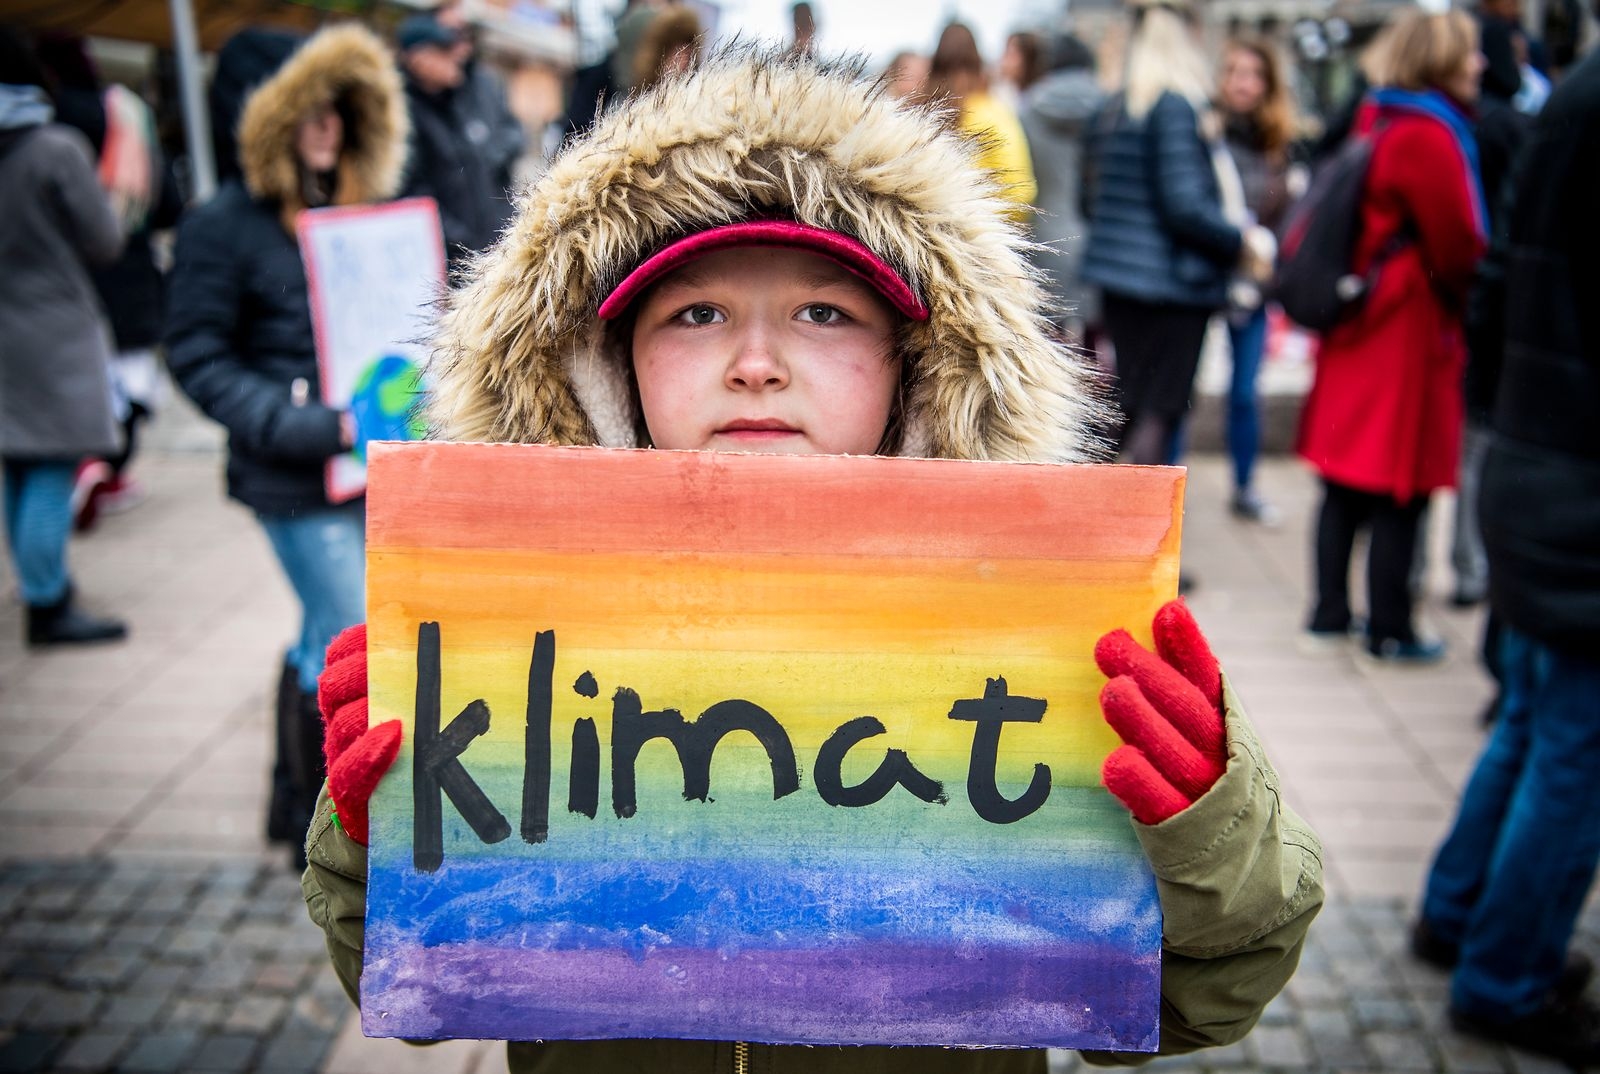 Nioåriga Evelyn Svensson som har gjort sin skylt själv demonstrerar för klimatet.